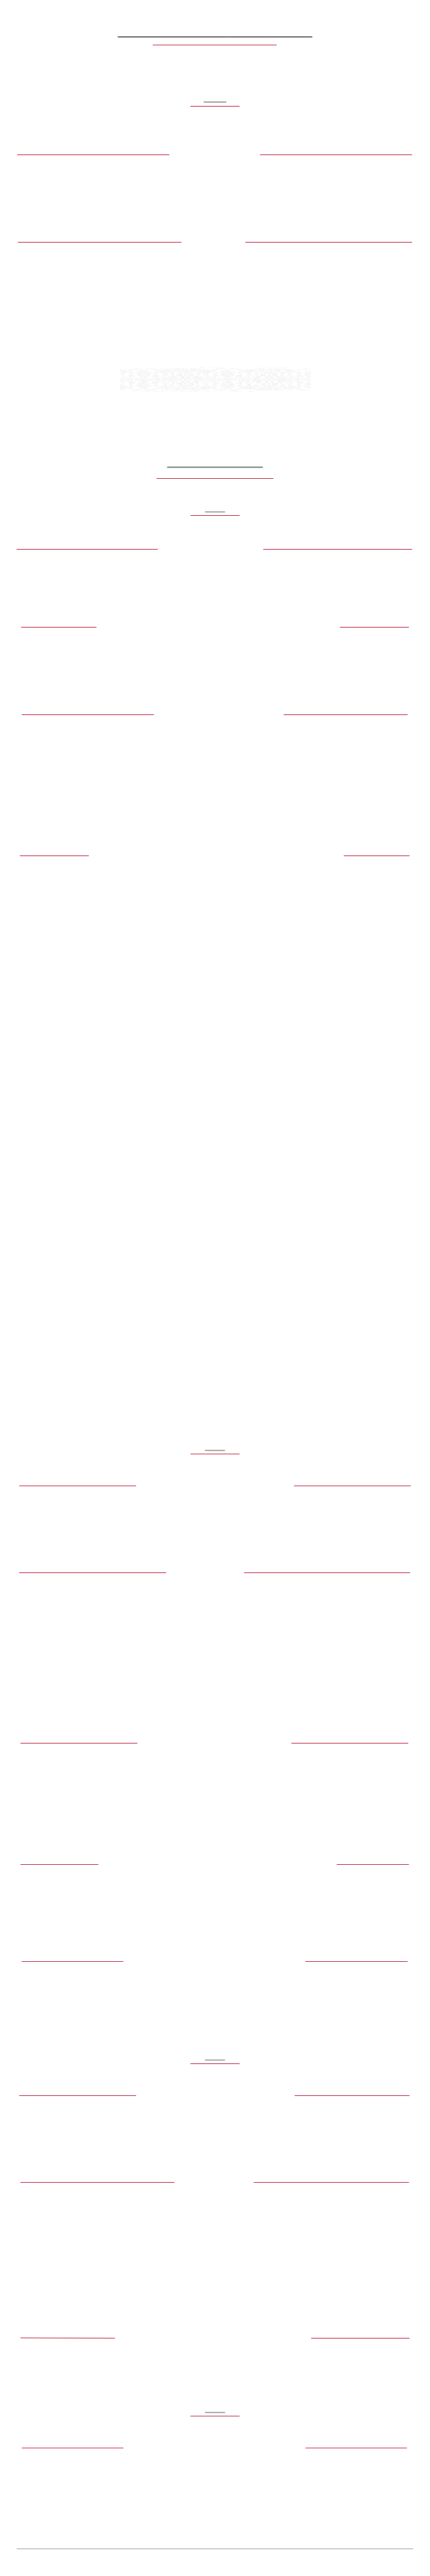    
Concerts à venir / Coming concerts

￼



2014
￼



￼ Mars-avril, Rennes ￼


Festival Baroque, et vous ?
Musique de chambre et concerts en orchestre


￼ Juin, Rennes ￼


Vendredi 27 et samedi 28 juin :
Concert avec la Maîtrise de Bretagne (dir. Jean-Michel Noël) :
Te Deum de Charpentier et Messe de Port-Royal





￼





Concerts passés

￼


2013
￼


￼ Février, Ploermel (56) ￼

	•	Concert et masterclass pour le conservatoire de Ploermel :
L'Italie en Europe : G. F. Händel, P. Locatelli, A. Vivaldi, J. M. Leclair, traverso, viole de gambe, violoncelle, clavecin.

￼ Juin, festival Académie Bach, Arques-la-Bataille (76) ￼

 Avec l’ensemble Il Nuovo Concerto :
 François Couperin, Leçons de Ténèbres ; deux chanteuses, viole de gambe, clavecin et orgue.



￼ Août, château d'Esplas (12) ￼

 Trois concerts avec l’ensemble Il Nuovo Concerto :
 R. De Lalande, Leçons de Ténèbres, J. S. Bach, sonates pour clavecin & viole de gambe,
 Pavanes & Tombeaux français du XVIIe siècle 

Myriam Arbouz, soprano
Claire Gobillard, viole de gambe Pascal Dubreuil, orgue & clavecin, direction musicale


￼ Août, Académie Bach, festival d'Arques-la-Bataille (76) ￼

Quatre concerts avec l’ensemble Il Nuovo Concerto :

Mercredi 21 août :

De Lalande, IIIe Leçon du Mercredy Saint, chant hébraïque, Lamentations de Jérémie

Myriam Arbouz, soprano
Alexandra Rübner, déclamation
Roula Safar, chant hébraïque
Claire Gobillard, viole de gambe Pascal Dubreuil, orgue & clavecin, direction musicale

Jeudi 22 août :

De Lalande, IIIe Leçon du Jeudy Saint & pièces d’orgue
Textes de Fernando Pessoa, Rainer Maria Rilke

Myriam Arbouz, soprano
Alexandra Rübner, déclamation
Claire Gobillard, viole de gambe
Marc Meisel, grand orgue Pascal Dubreuil, orgue & clavecin, direction musicale

Vendredi 23 août :

De Lalande, IIIe Leçon du Vendredy Saint & pièces pour viole de gambe & clavecin

Myriam Arbouz, soprano
Alexandra Rübner, déclamation
Claire Gobillard, viole de gambe Pascal Dubreuil, orgue & clavecin, direction musicale

Samedi 24 août :

De Lalande, Miserere à voix seule, Pavanes et tombeaux français du XVIIe siècle

Myriam Arbouz, soprano
Alexandra Rübner, déclamation
Chœur de femmes de l'Ensemble Vocal Bergamasque
Claire Gobillard, viole de gambe
Marc Meisel, grand orgue Pascal Dubreuil, orgue & clavecin, direction musicale




2012
￼


￼ Février, Eglise des Dominicains, Paris ￼

	•	François Couperin : Leçons de Ténèbres & pièces pour viole de gambe & basse continue : deux chanteuses, clavecin, viole de gambe.



￼ Avril/mai, Rennes ￼

Deuxième édition du festival Baroque... et vous ? :
	•	Concerts en orchestre :
J. S. Bach : concerto pour violon et orchestre, concerto pour clavecin, violon, traverso & orchestre, C. Ph. E. Bach : concerto pour traverso et orchestre.

	•	Concerts en musique de chambre :
 F. Couperin, M. Marais : trois Leçons de Ténèbres et pièces pour viole de gambe et basse continue, deux chanteuses, clavecin, viole de gambe.




￼ Mai, Parlement de Bretagne, Rennes ￼

Deux concerts en clôture de la saison des Concerts de Midi :

	•	J. S. Bach & consort : J. S. Bach, Offrande Musicale, Sonates et Trios de la famille Bach et G. Ph. Telemann, violon, traverso, viole de gambe, violoncelle, clavecin.




￼ Juillet, festival de musique ancienne de La Richardais (35) ￼


	•	Œuvres de J. S. Bach, G. Ph. Telemann, B. Marini, G. Frescobaldi, violon, traverso, clavecin.




￼ Septembre, festival Les Ephémères, Rennes ￼

	•	Concert avec la Maîtrise de Bretagne :
Q. Gasparini : Stabat Mater, A. Vivaldi et A. Corelli : sonates pour deux violons & basse continue, deux violons, clavecin, orgue, violoncelle.



2011
￼


￼ Mars, Parlement de Bretagne, Rennes ￼

	•	 “Hommage à Johann Sebastian Bach” : sonates pour clavecin & traverso de J. S. Bach, C.Ph.E. Bach & J. Ch. F. Bach.



￼ Avril/Mai, Rennes ￼

Première édition du festival Baroque... et vous ? :
	•	Concerts en orchestre : 

	•	G. Ph. Telemann : Suite pour flûte à bec & orchestre, concerto pour flûte à bec, traverso & orchestre ; J. S. Bach : Ve Concerto Brandebourgeois.

	•	Programme de Motets français (N. Bernier) & pièces pour viole de gambe & basse continue   (F. Couperin) : trois chanteurs, clavecin, viole de gambe.



￼ Octobre, festival de musique ancienne de Brest ￼

	•	J. S. Bach, J. M. Leclair, J. Ph. Rameau : sonates, trios & Pièces de Clavecin en Concerts, violon, viole de gambe, clavecin.


2010
￼


￼ Septembre, Parlement de Bretagne, Rennes ￼

	•	 Création de l'ensemble Il Nuovo Concerto, deux concerts en orchestre :
J. S. Bach : concerto pour clavecin, Ve Concerto Brandebourgeois ; F. X. Richter : concerto pour flûte.



￼

